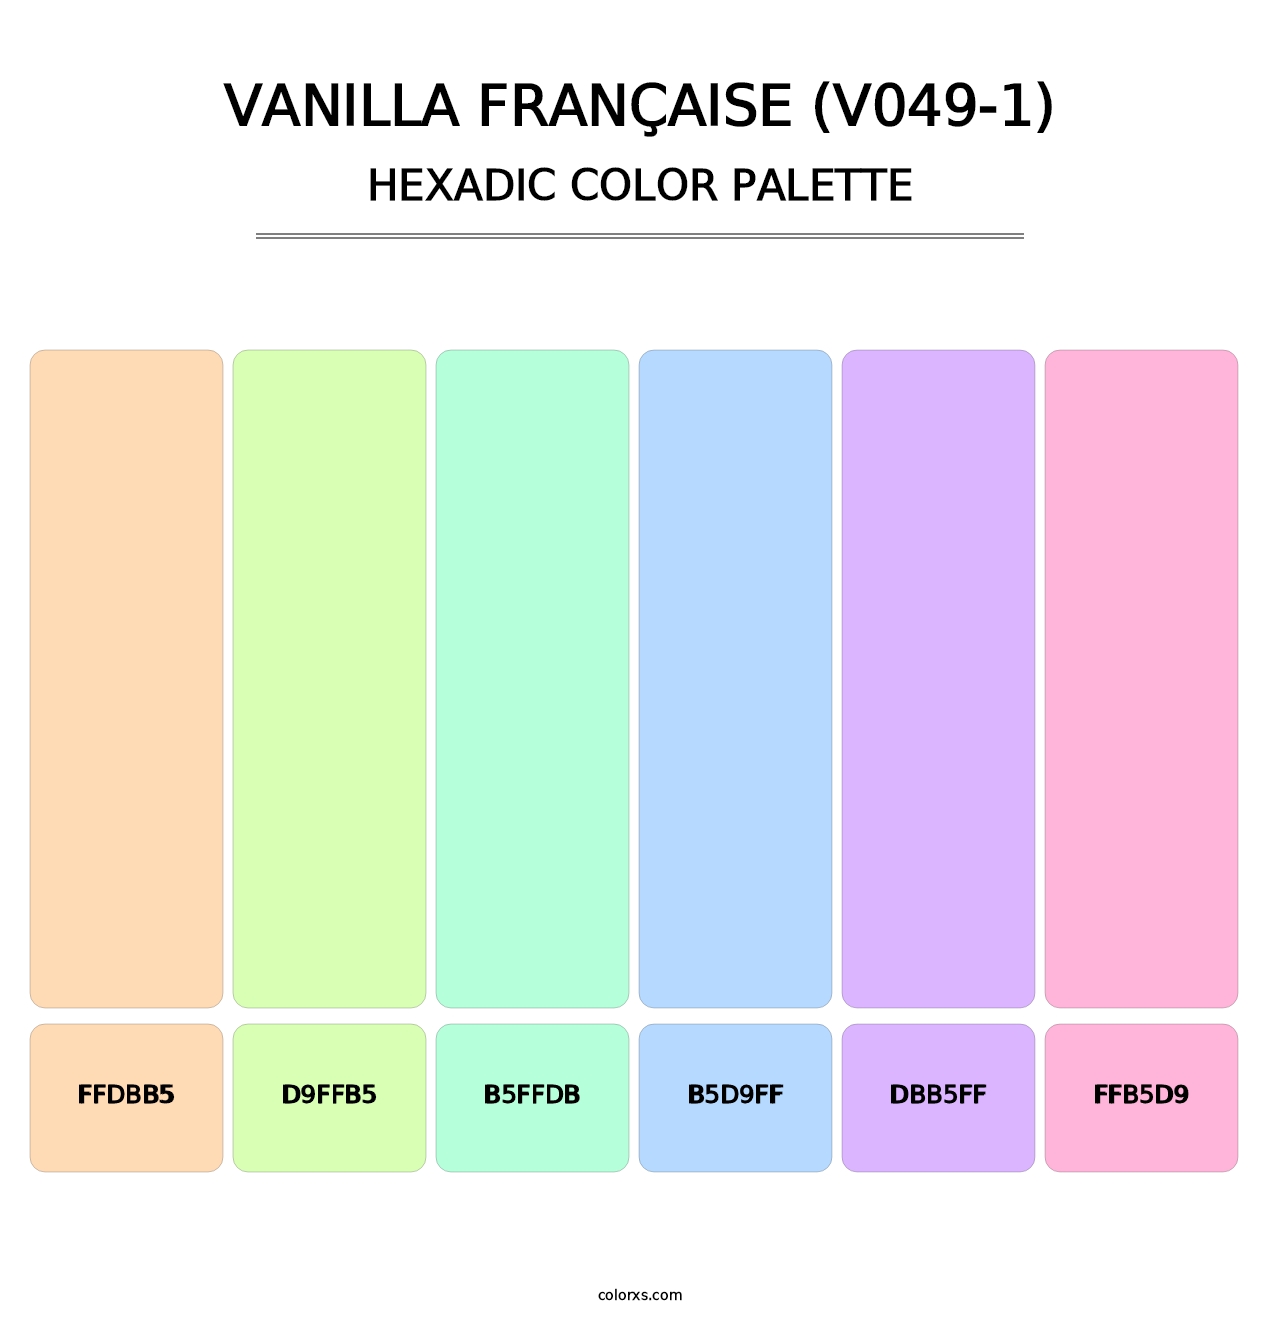 Vanilla Française (V049-1) - Hexadic Color Palette